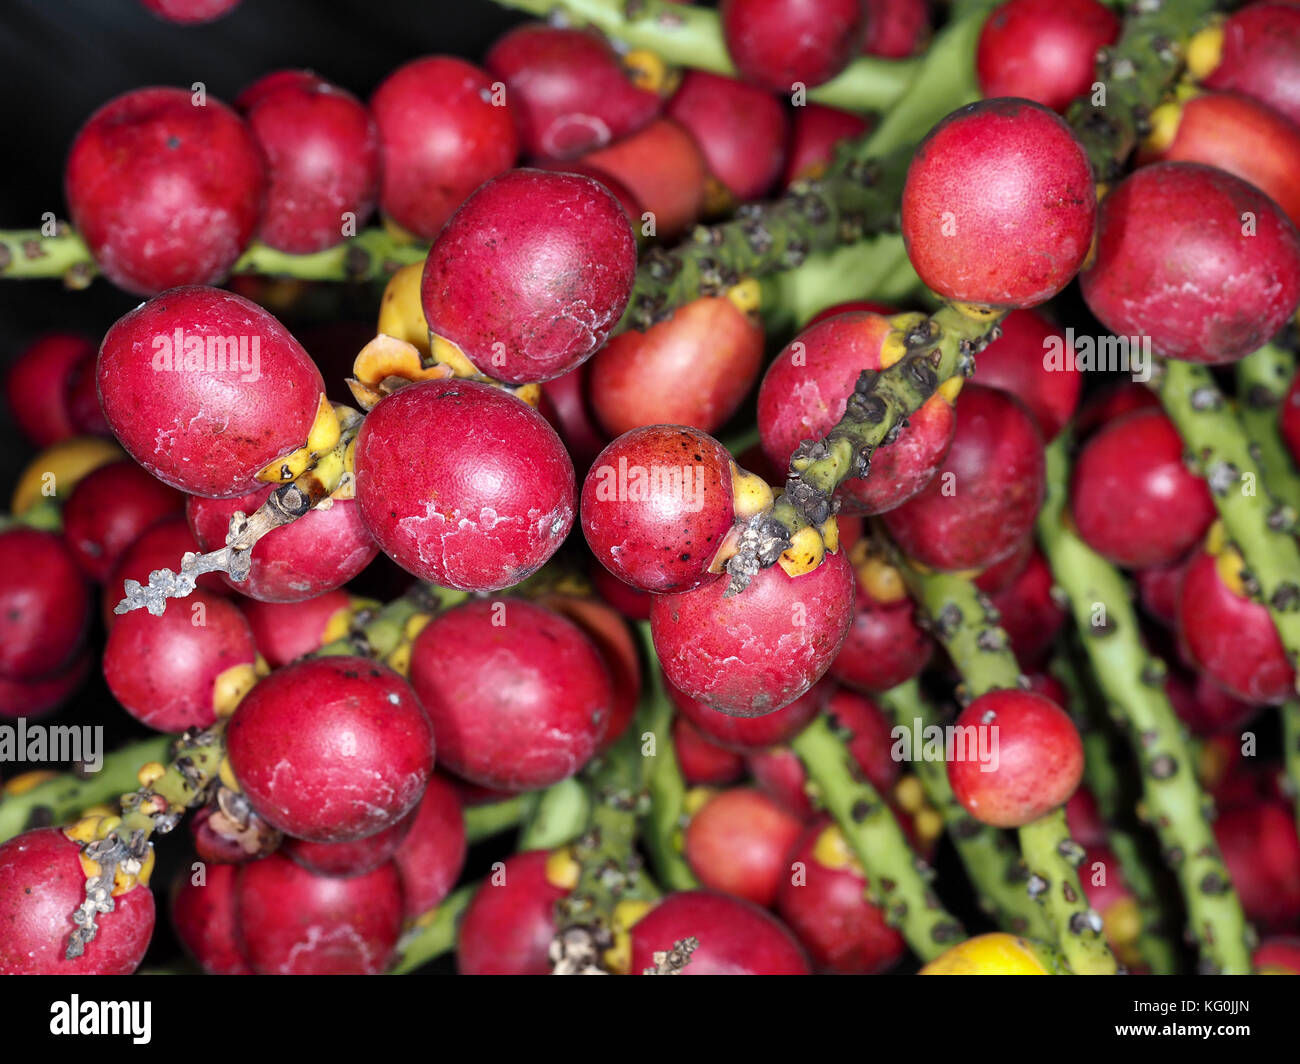 Sugar Palm enano (Arenga engleri) frutas (conocido por provocar una reacción alérgica severa) close-up Foto de stock